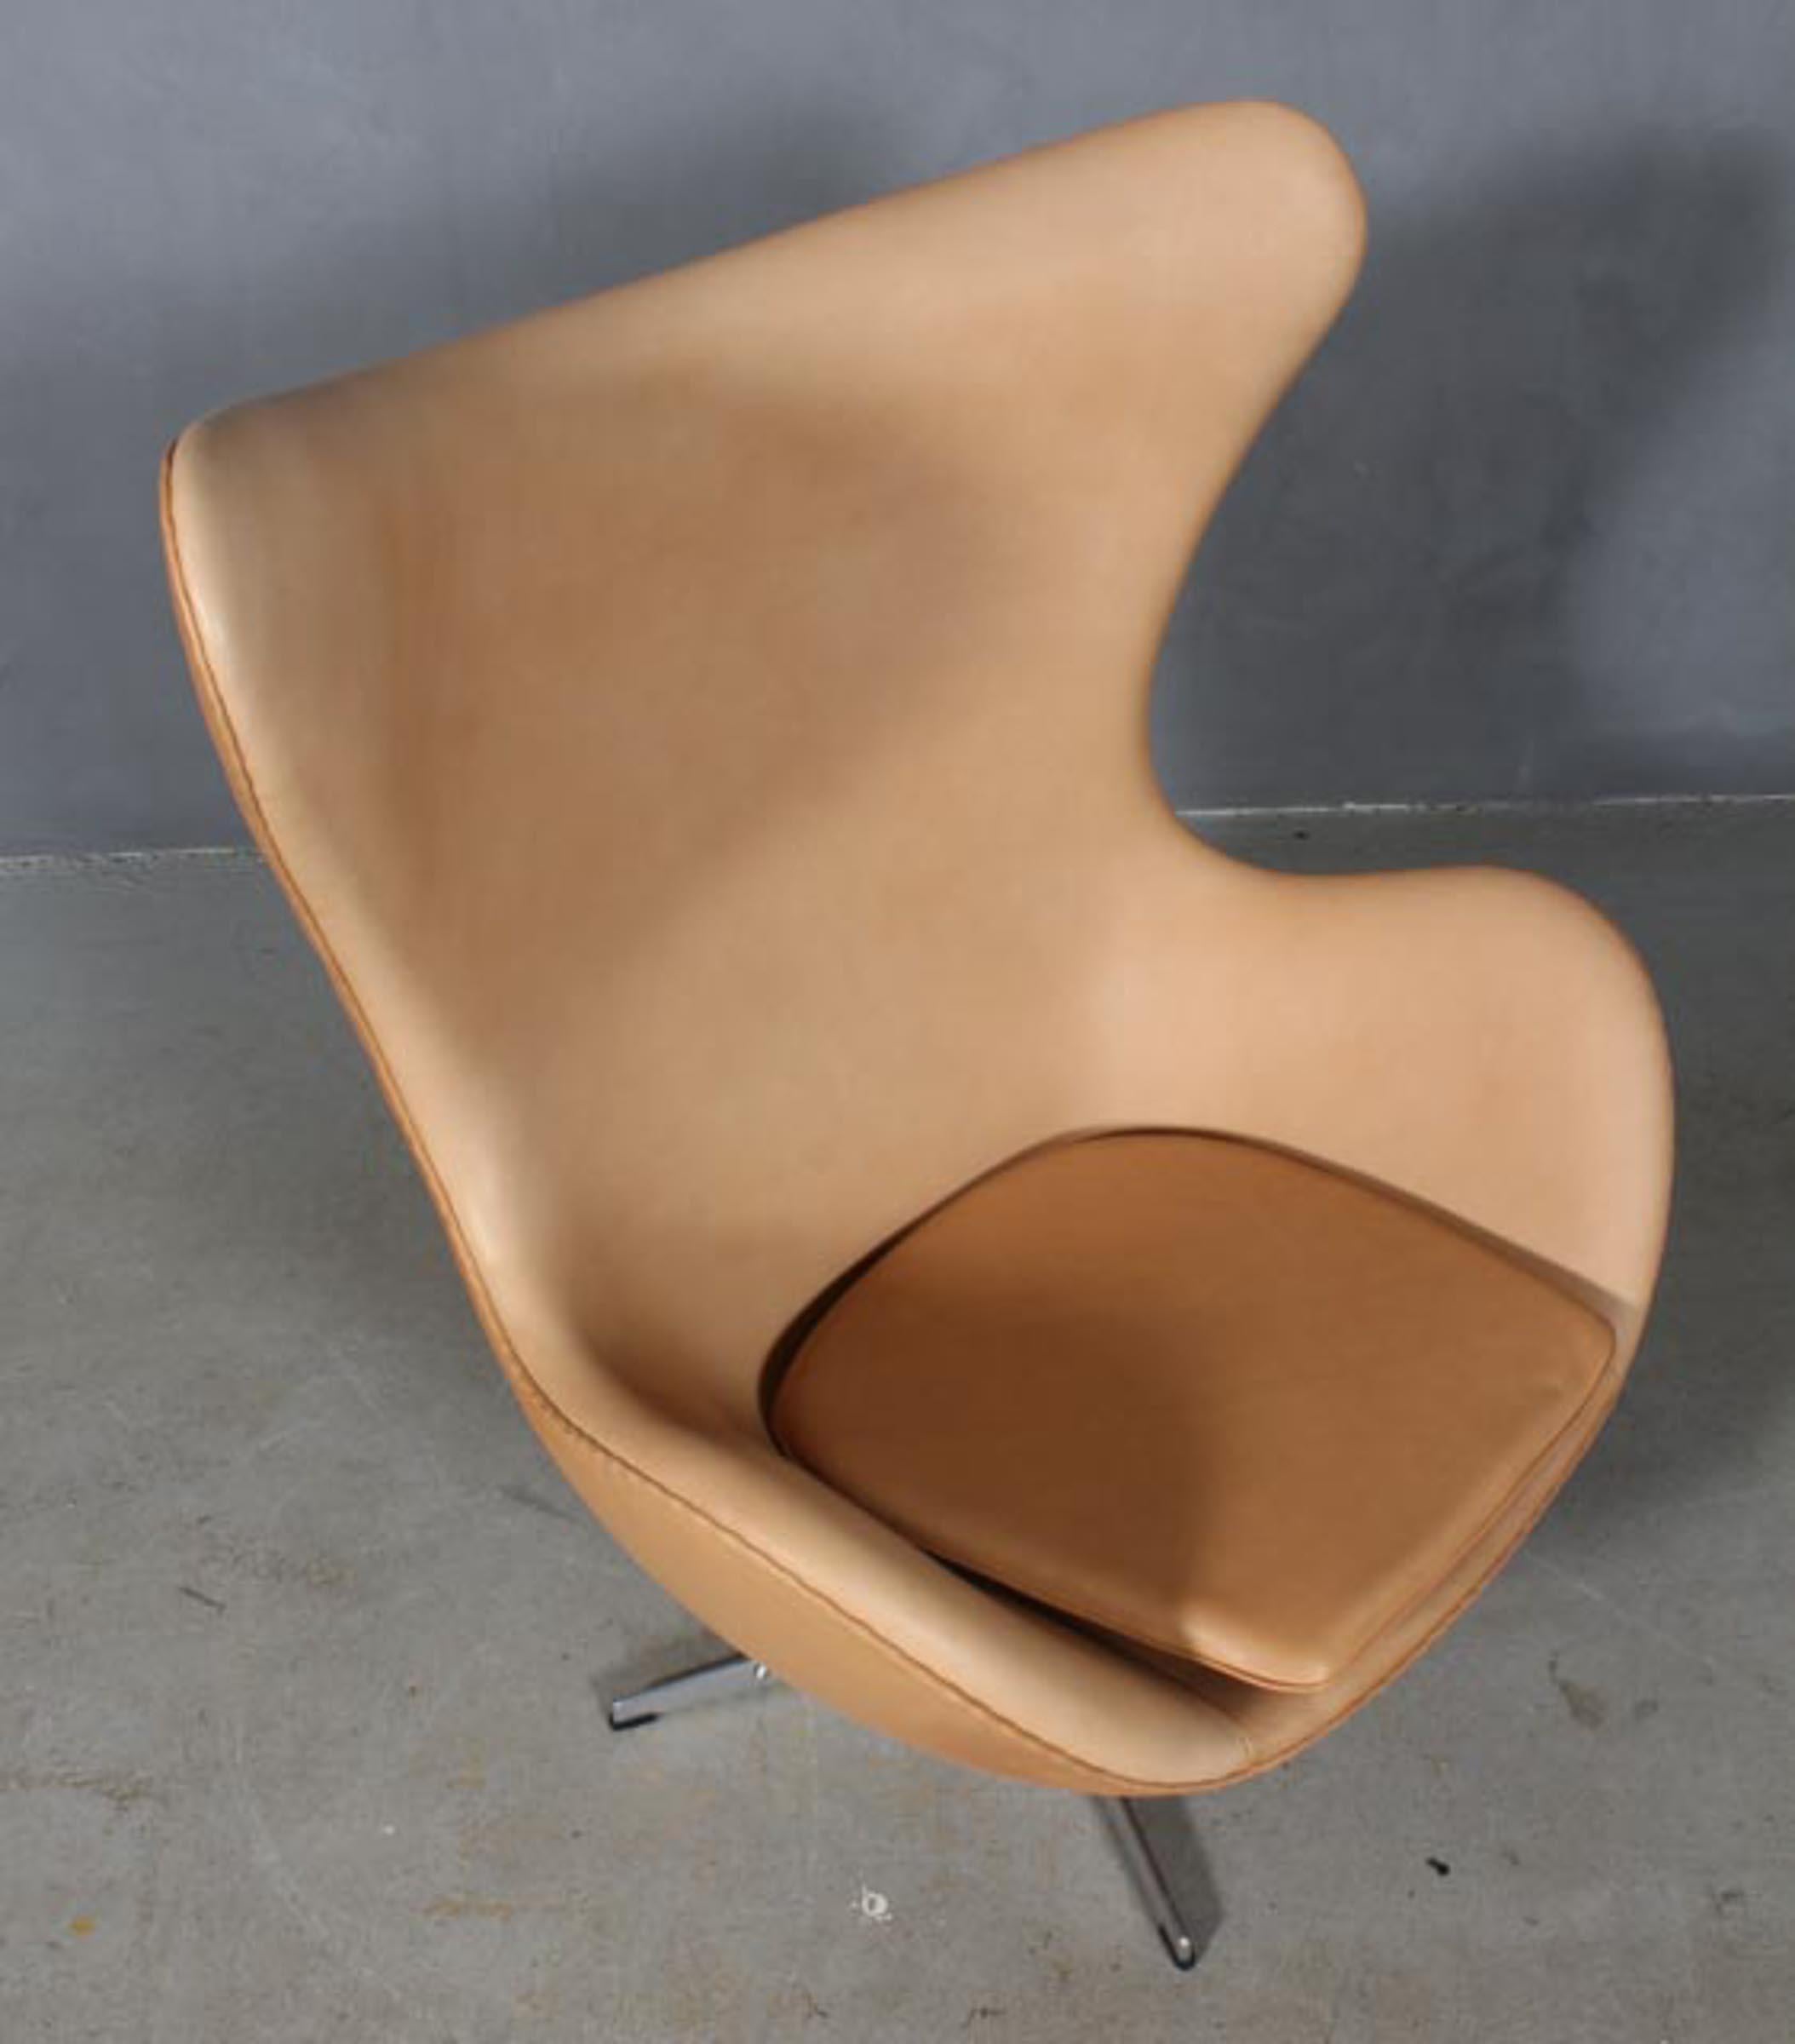 Arne Jacobsen Satz Sessel Modell Egg. Neu gepolstert mit Vacona Sahara Anilinleder.

Vier-Sterne-Fußkreuz mit Kippfunktion.

Hergestellt von Fritz Hansen.

Dieser ikonische Stuhl ist einer der berühmtesten Stühle der Welt und wird von